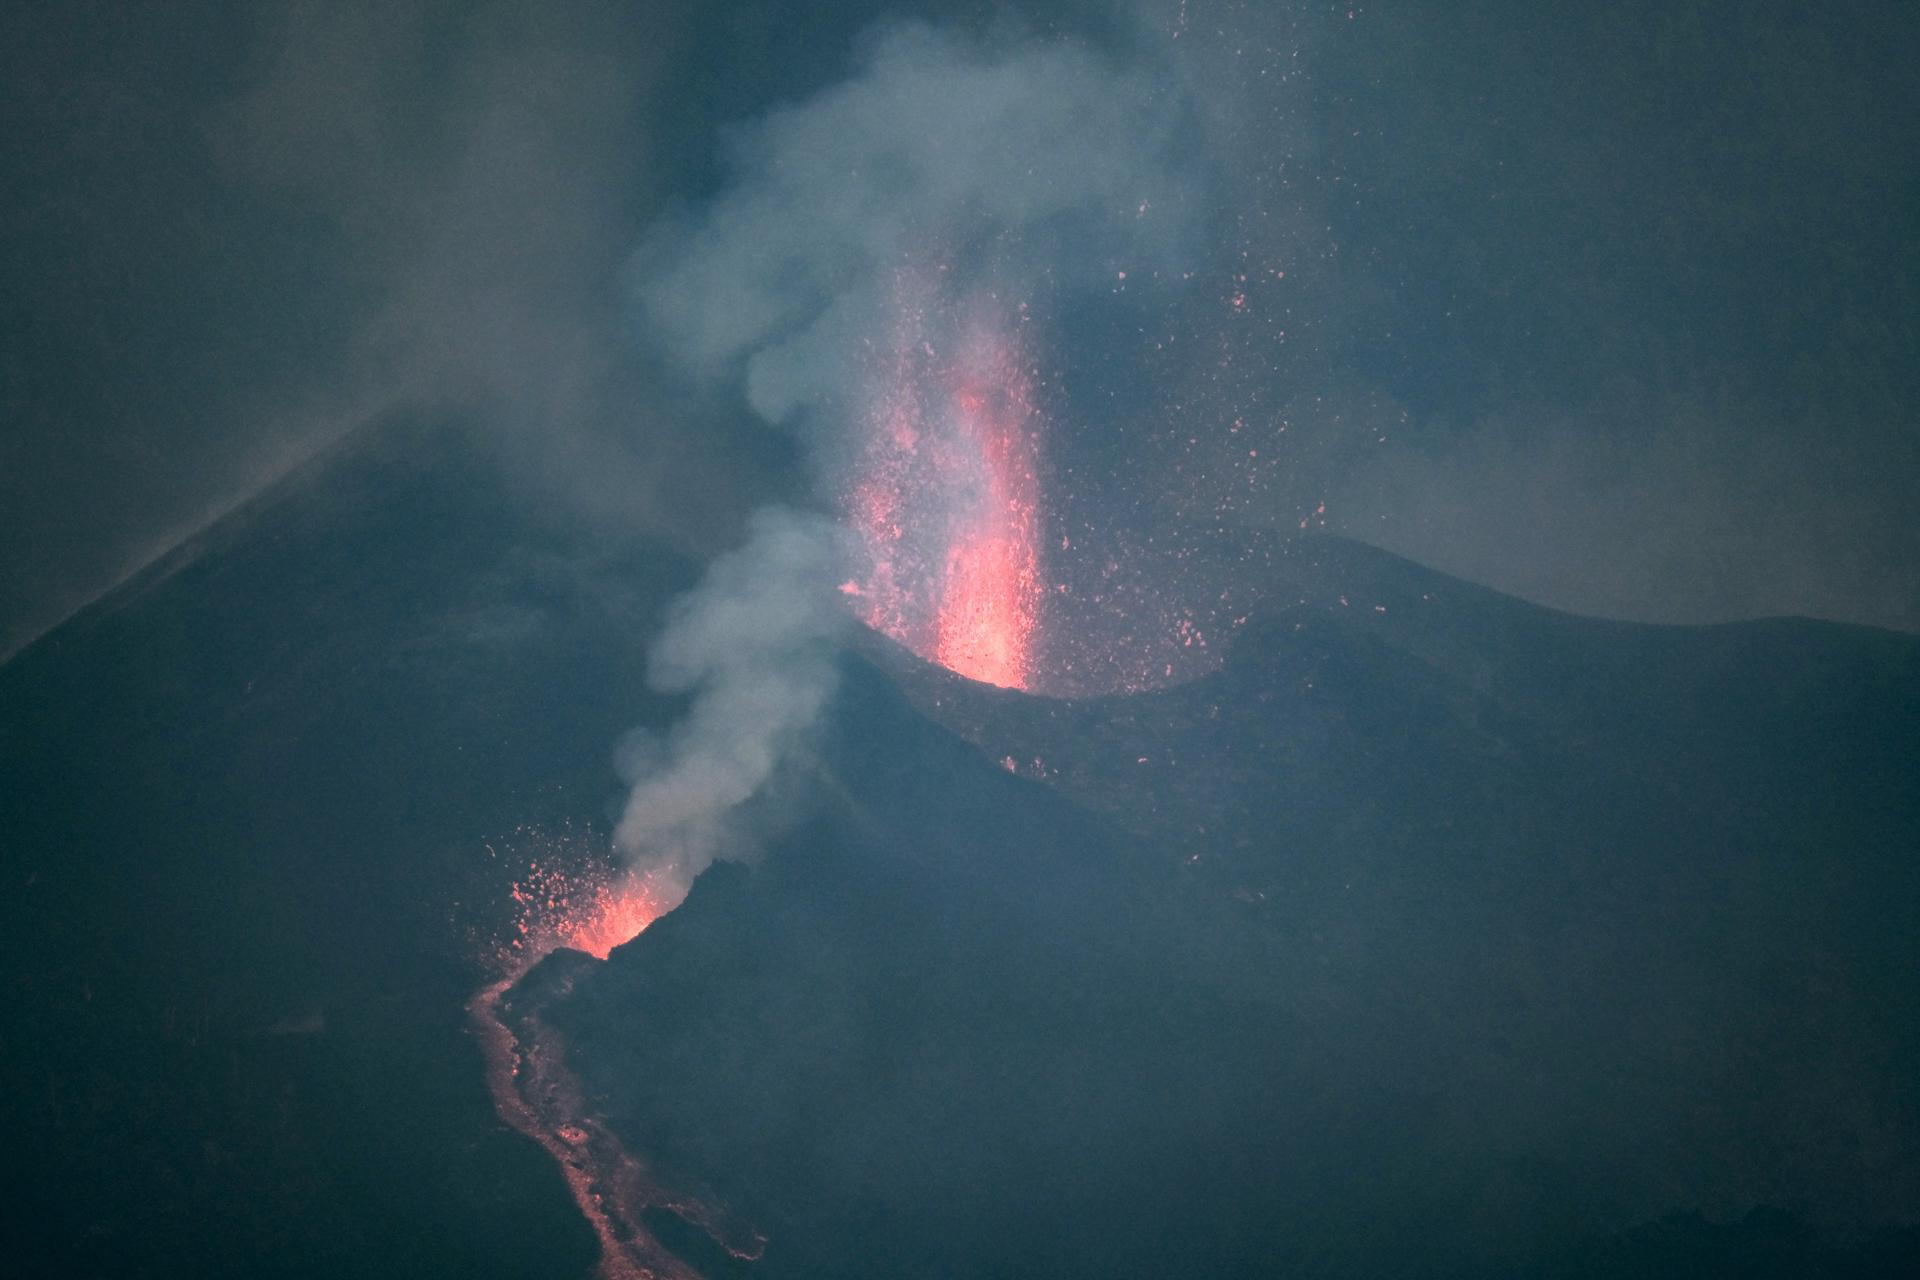 Foto de archivo de la erupción en Cumbre Vieja, La Palma, tomada el 27 de septiembre de 2021. EFE/Ángel Medina G.